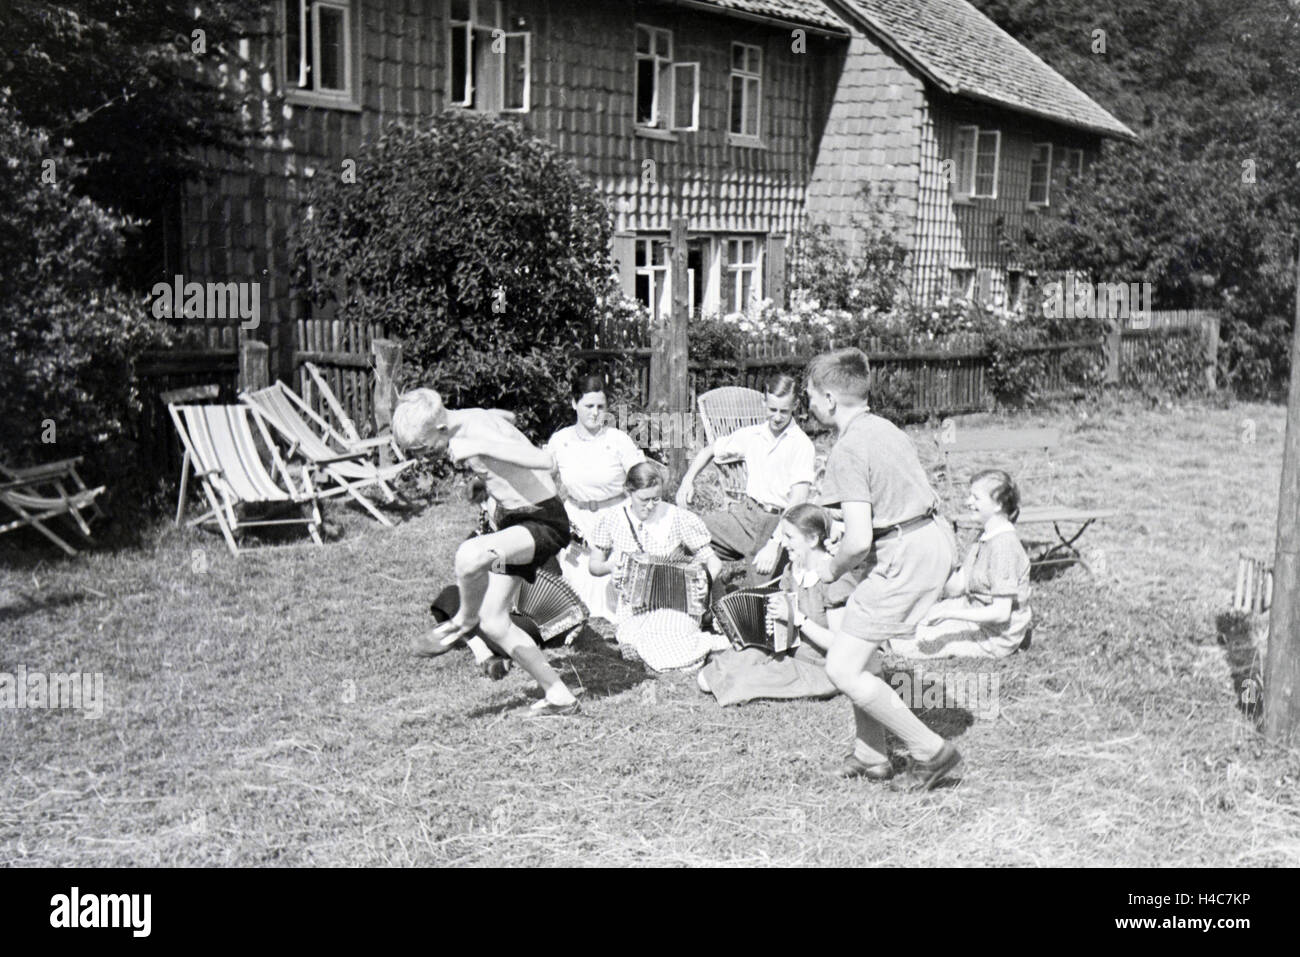 Schüler des Kolonial Schülerheims Harzburg während ihrer Freizeit, Deutsches Reich 1937. Students of the colonial residential school Harzburg having a break, Germany 1937. Stock Photo